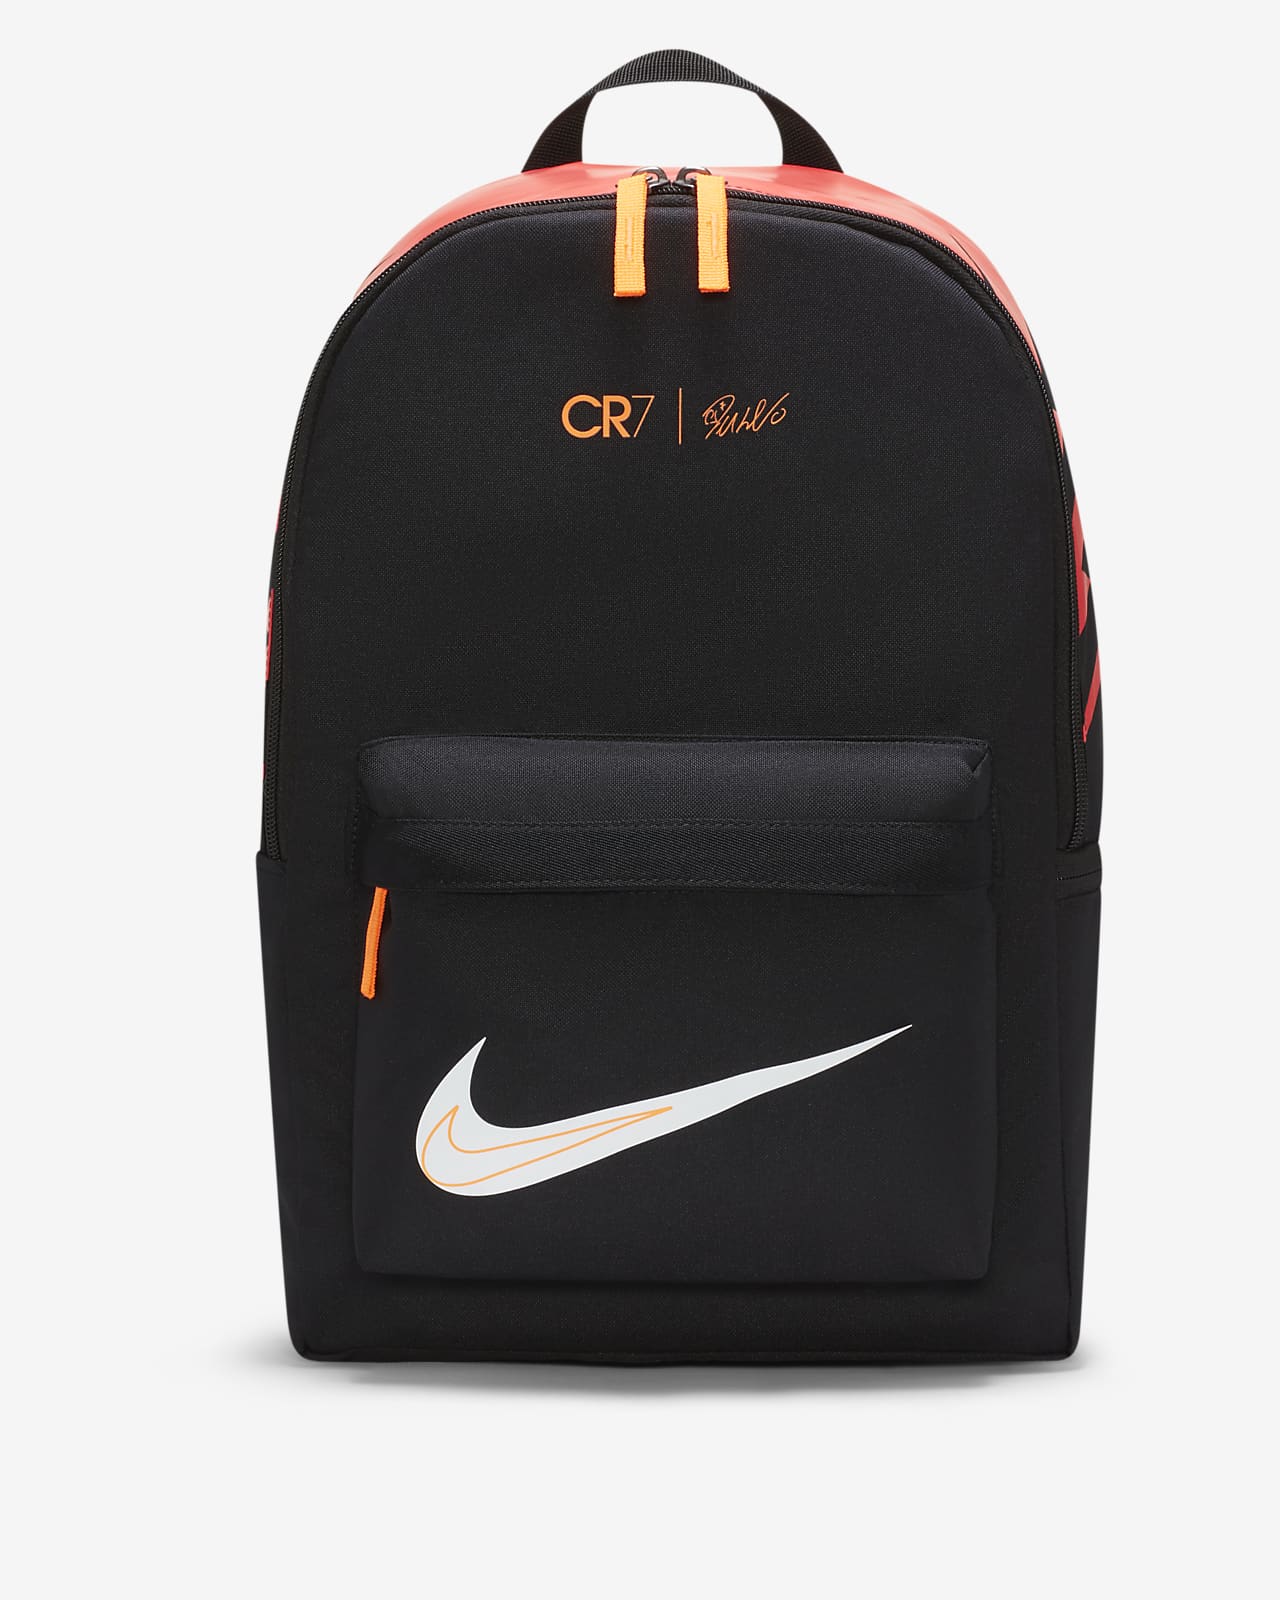 Nike公式 Cr7 キッズ サッカーバックパック オンラインストア 通販サイト